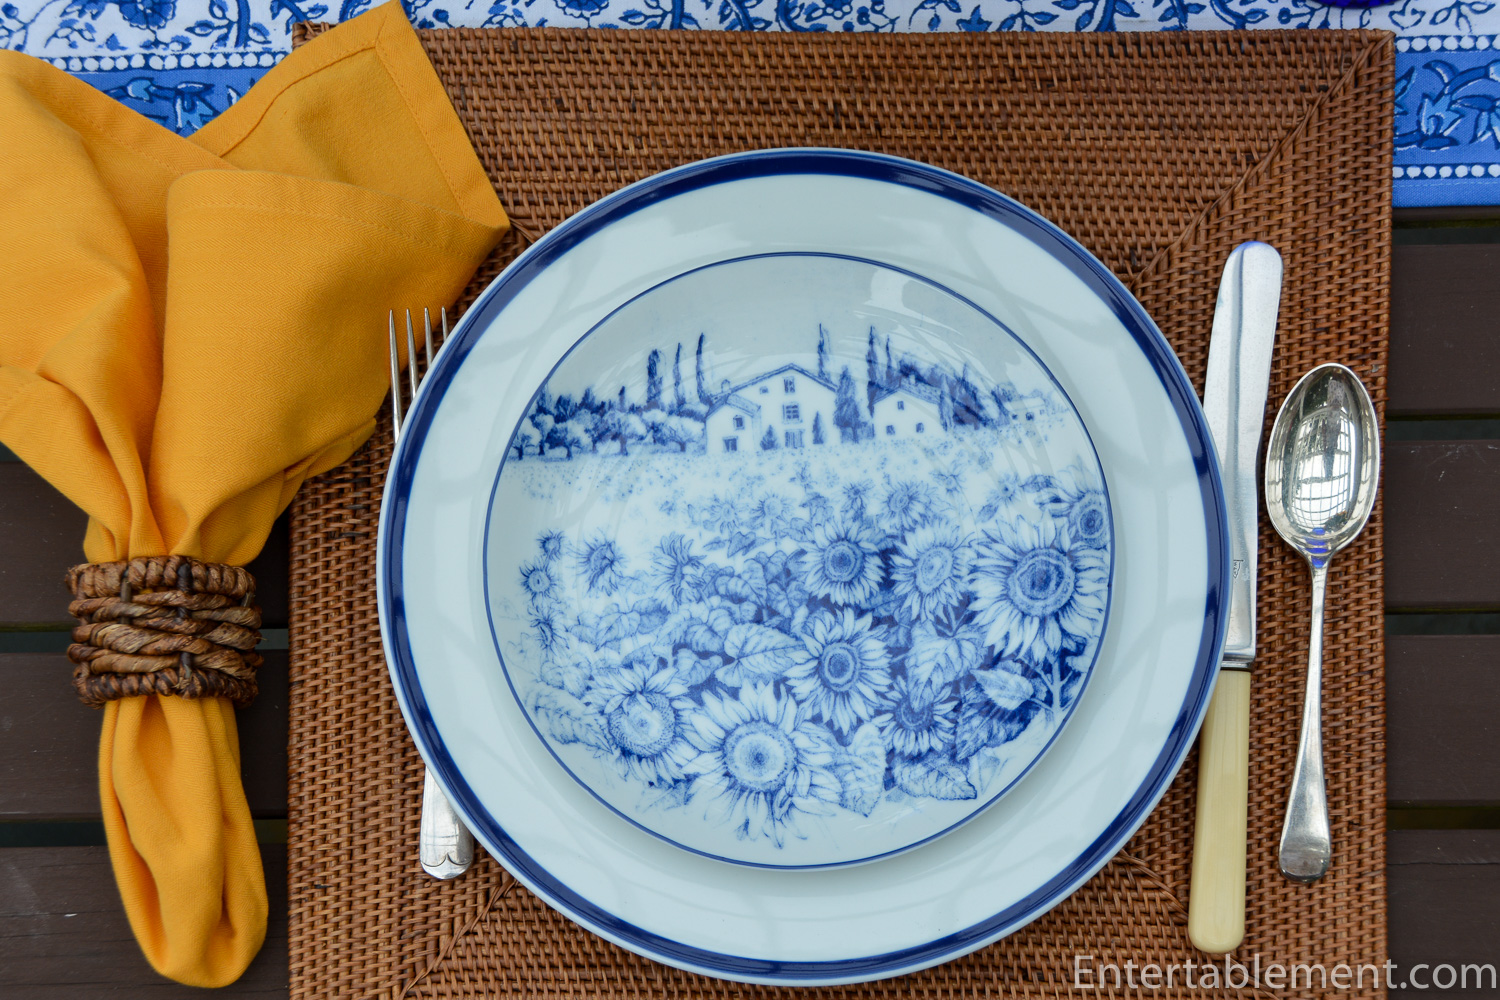 Brasserie Blue-Banded Porcelain Dinnerware Place Settings